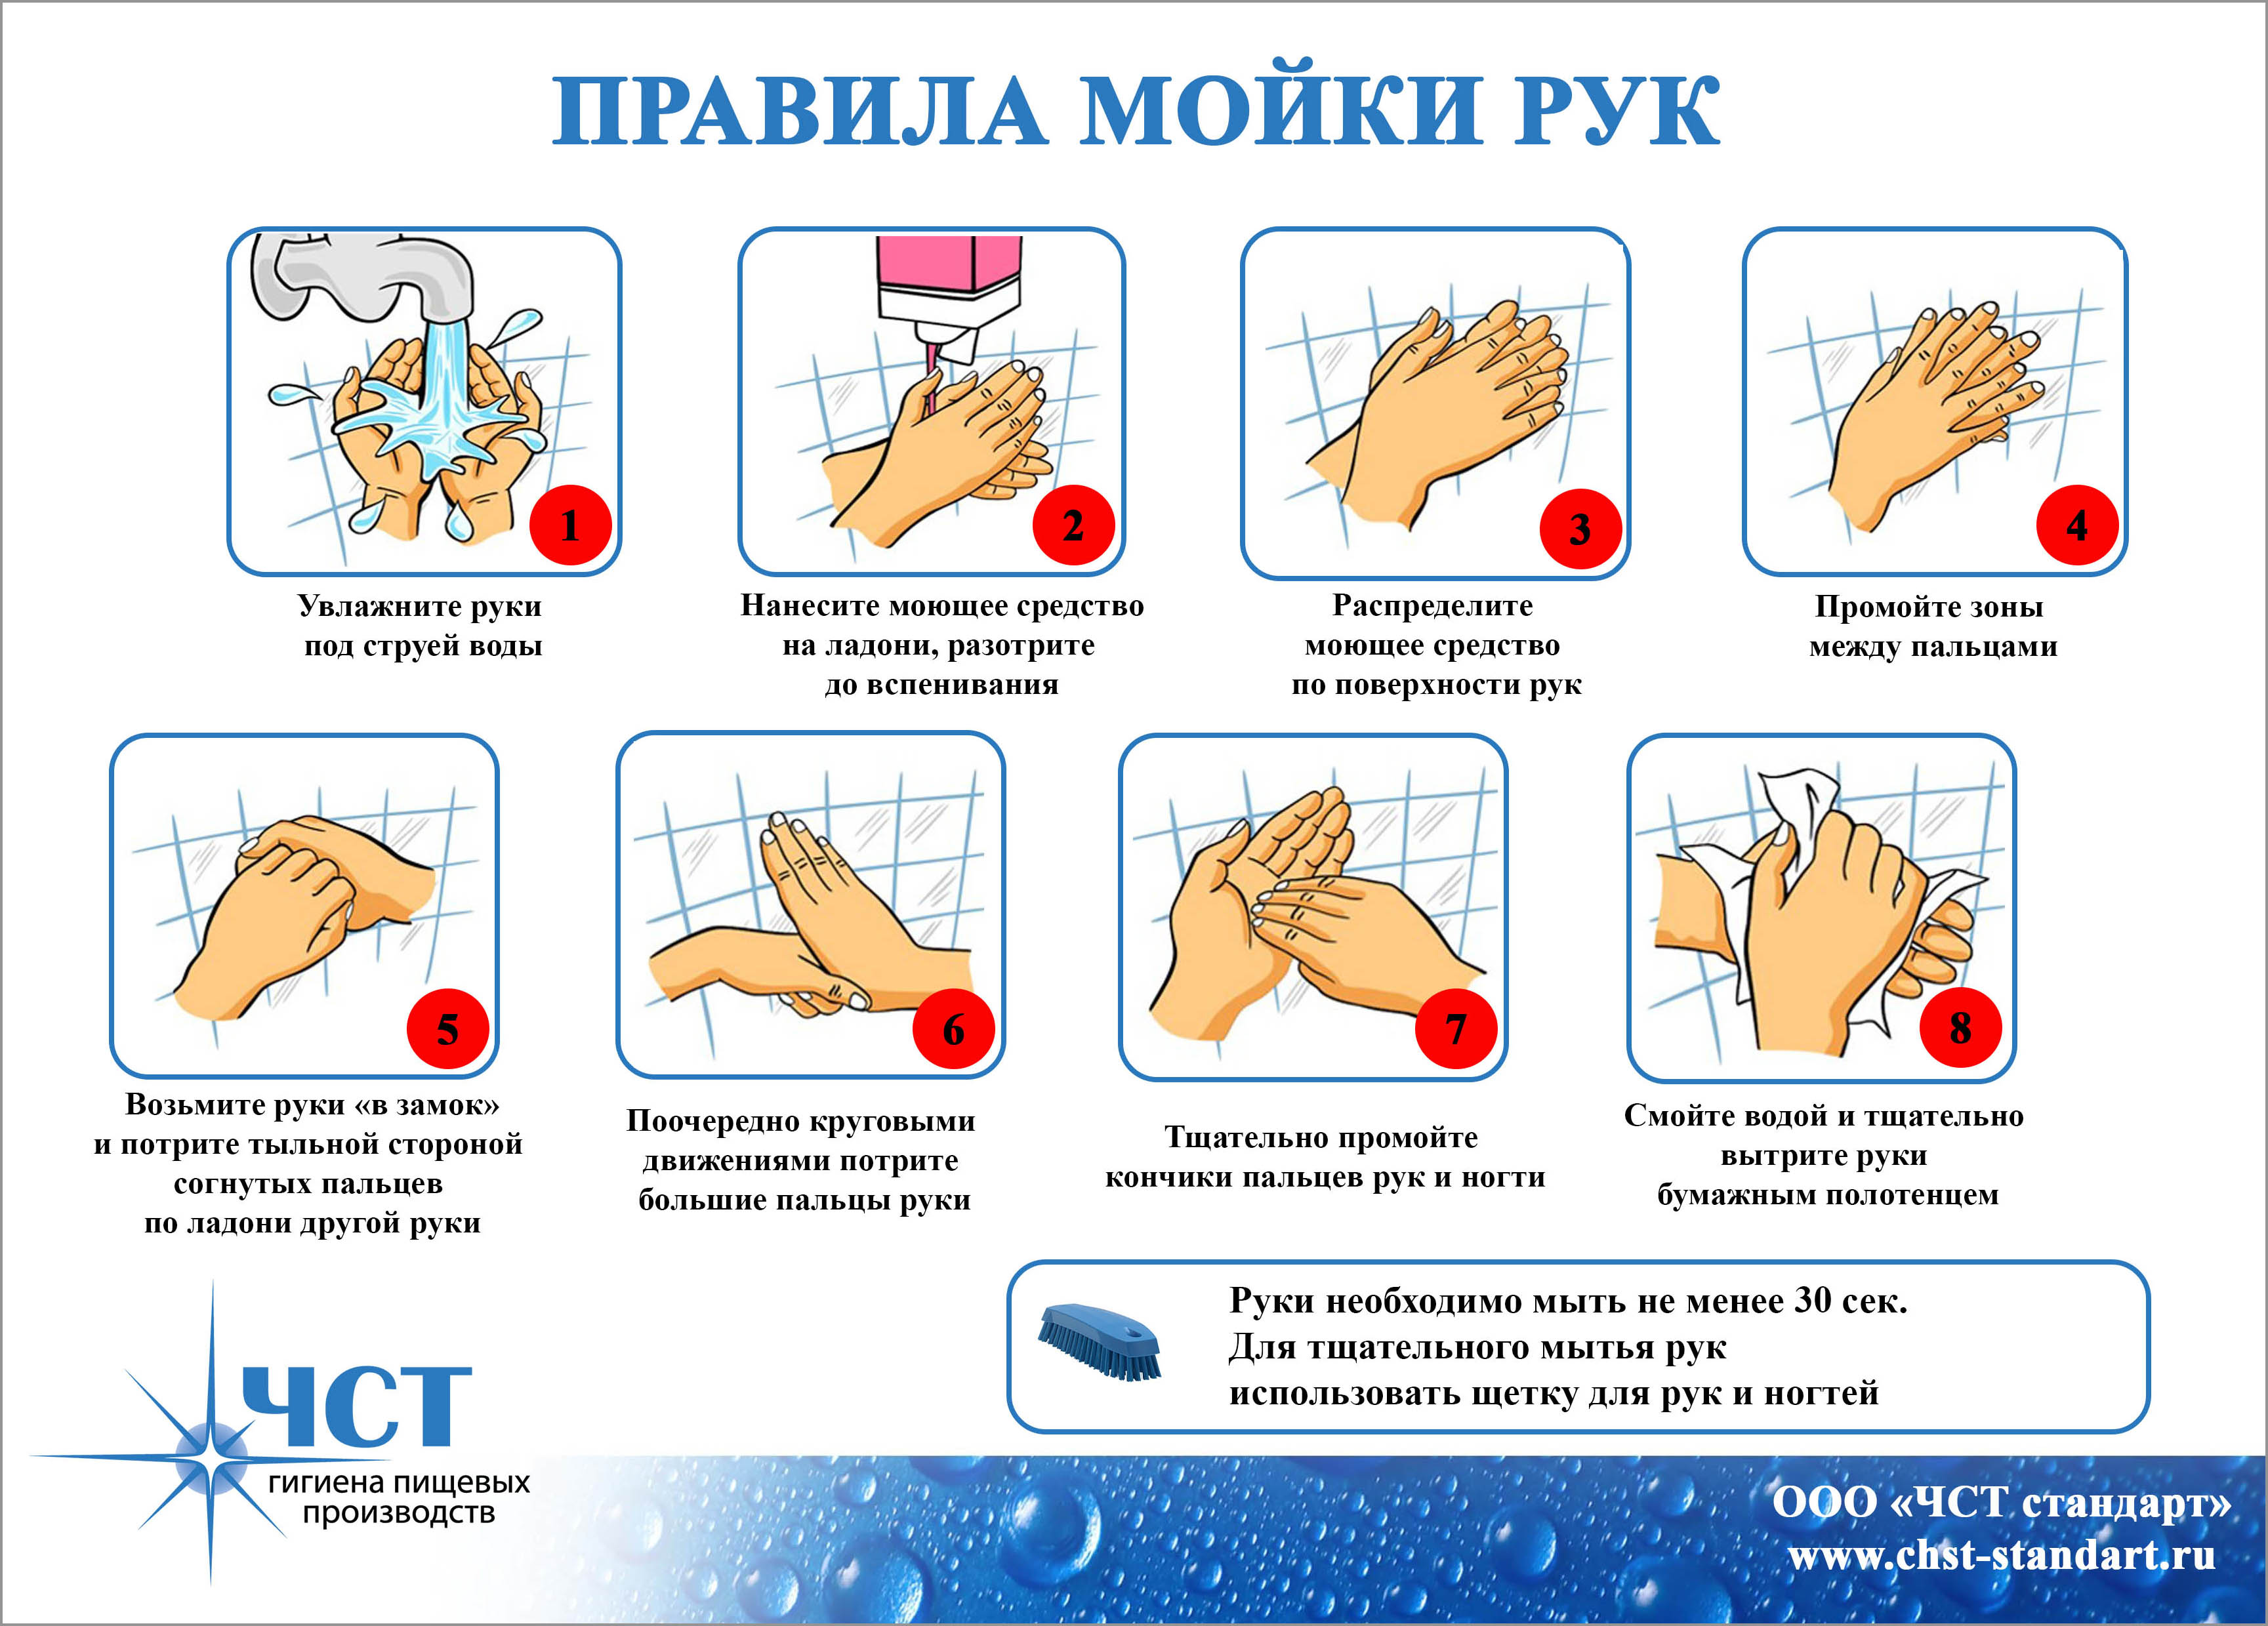 Приказ мытья рук. Гигиеническое мытье рук алгоритм. Памятка как правильно мыть руки Роспотребнадзора. Правильное мытье рук для детей. Правила гигиенического мытья рук.